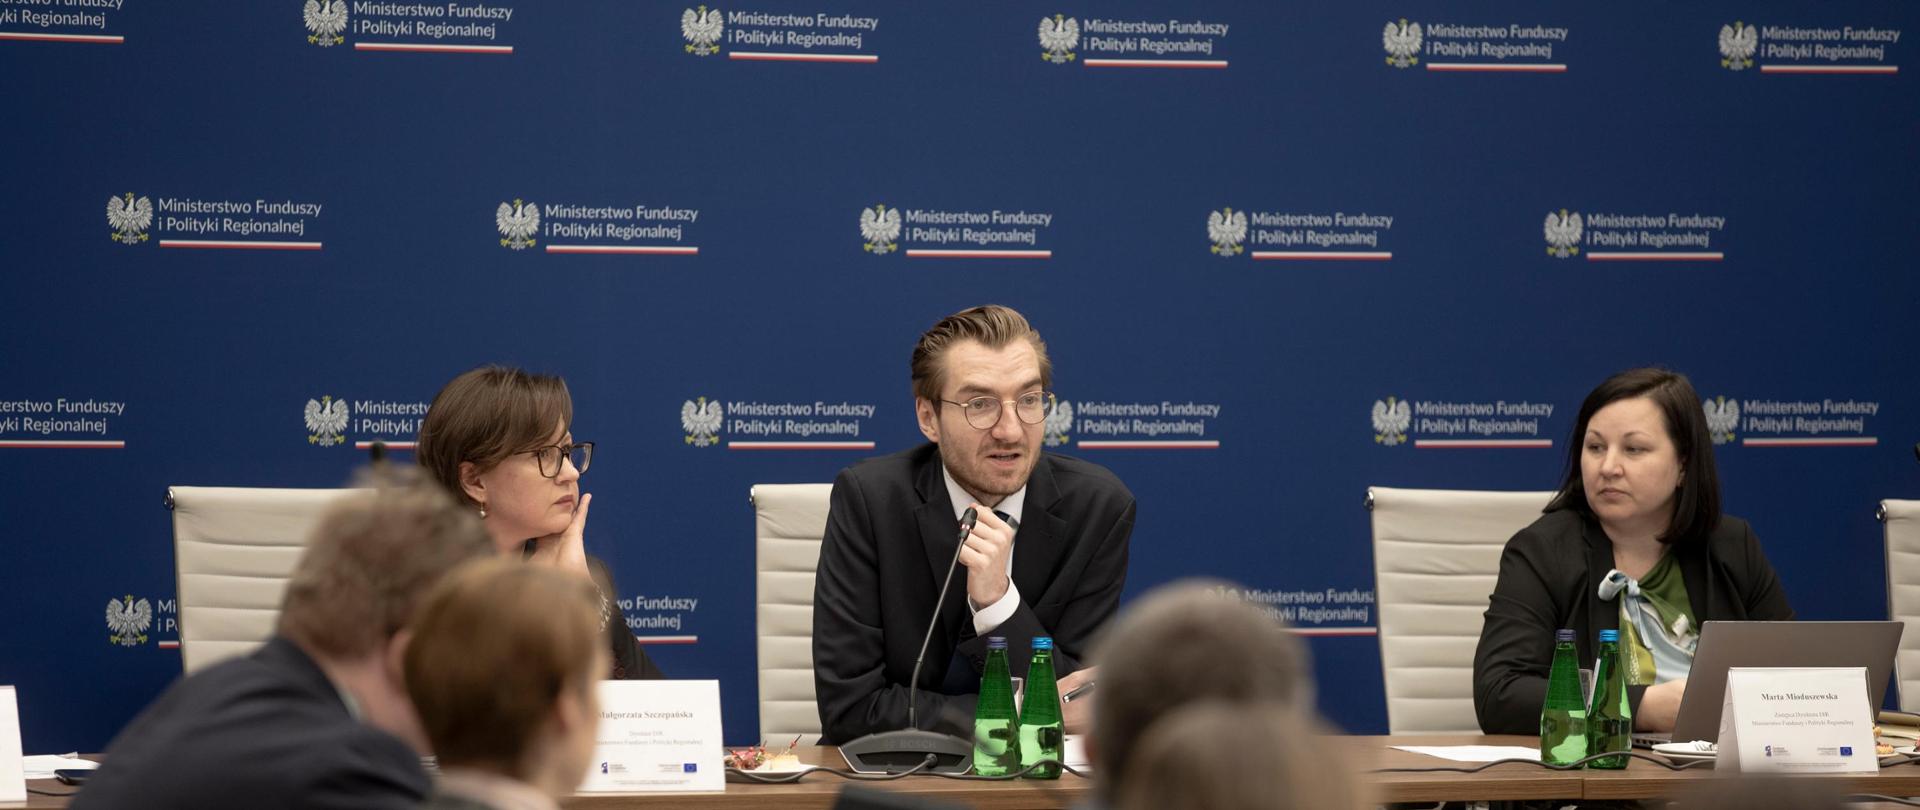 Trzy osoby siedzą przy stole. W środku, między dwiema kobietami, siedzi wiceminister Jan Szyszko. 